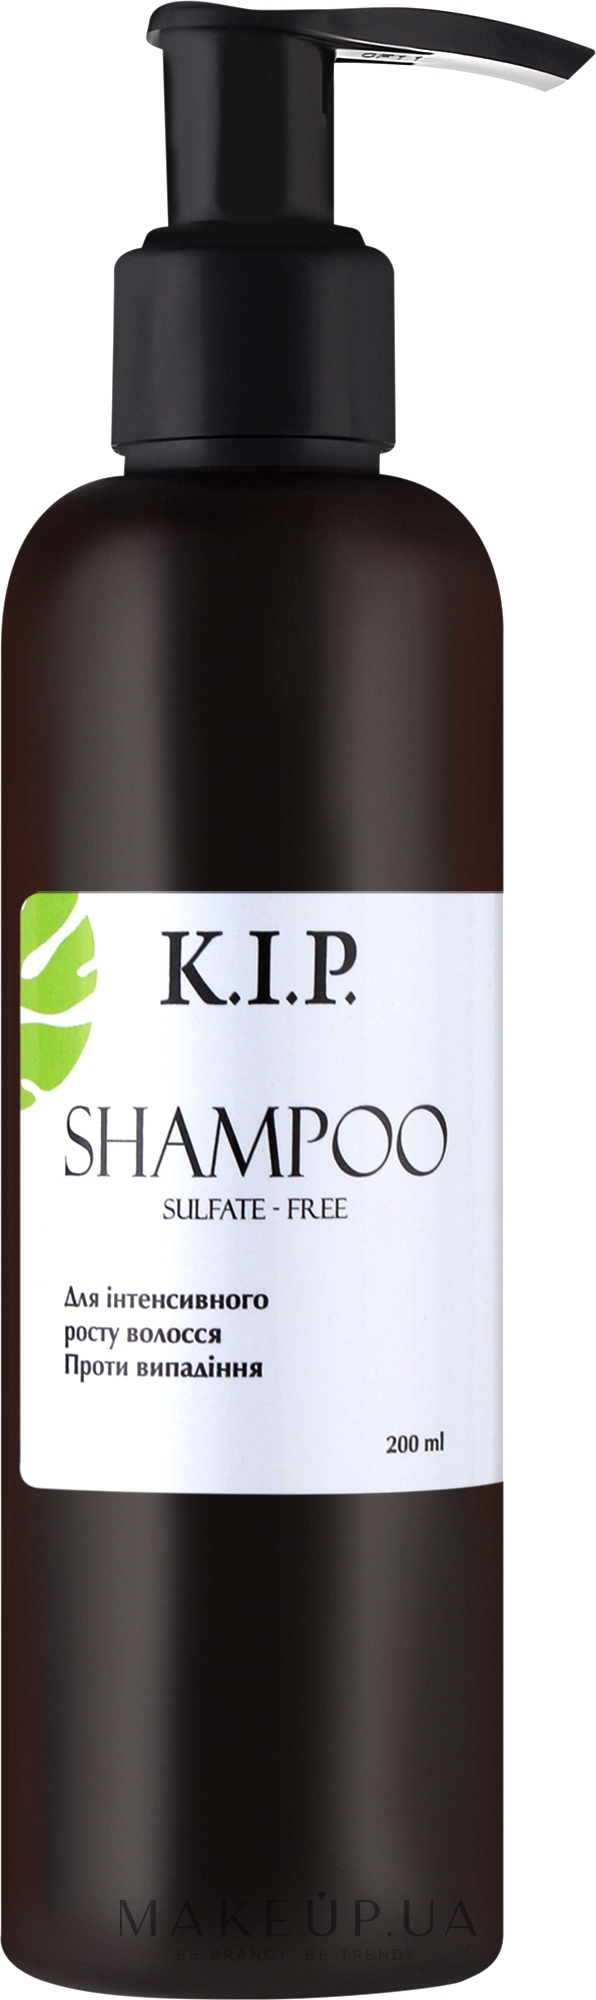 Бессульфатный шампунь для интенсивного роста волос - K.I.P. Shampoo — фото 200ml